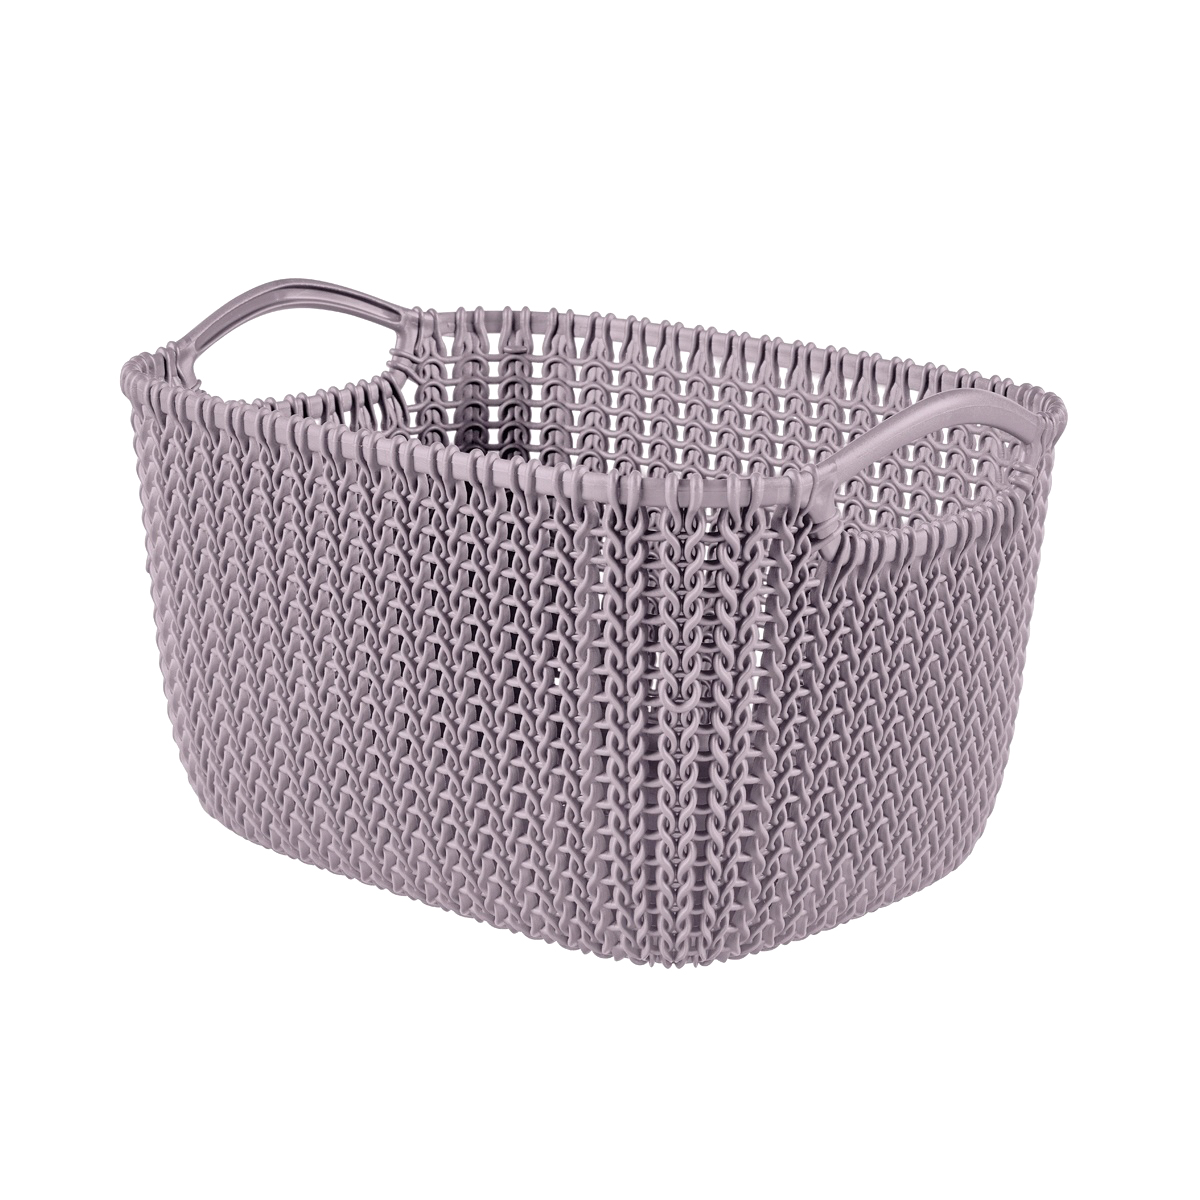 Корзинка Curver s knit 8l фиолетовая curver лоток knit 7x26x20см темно коричневый